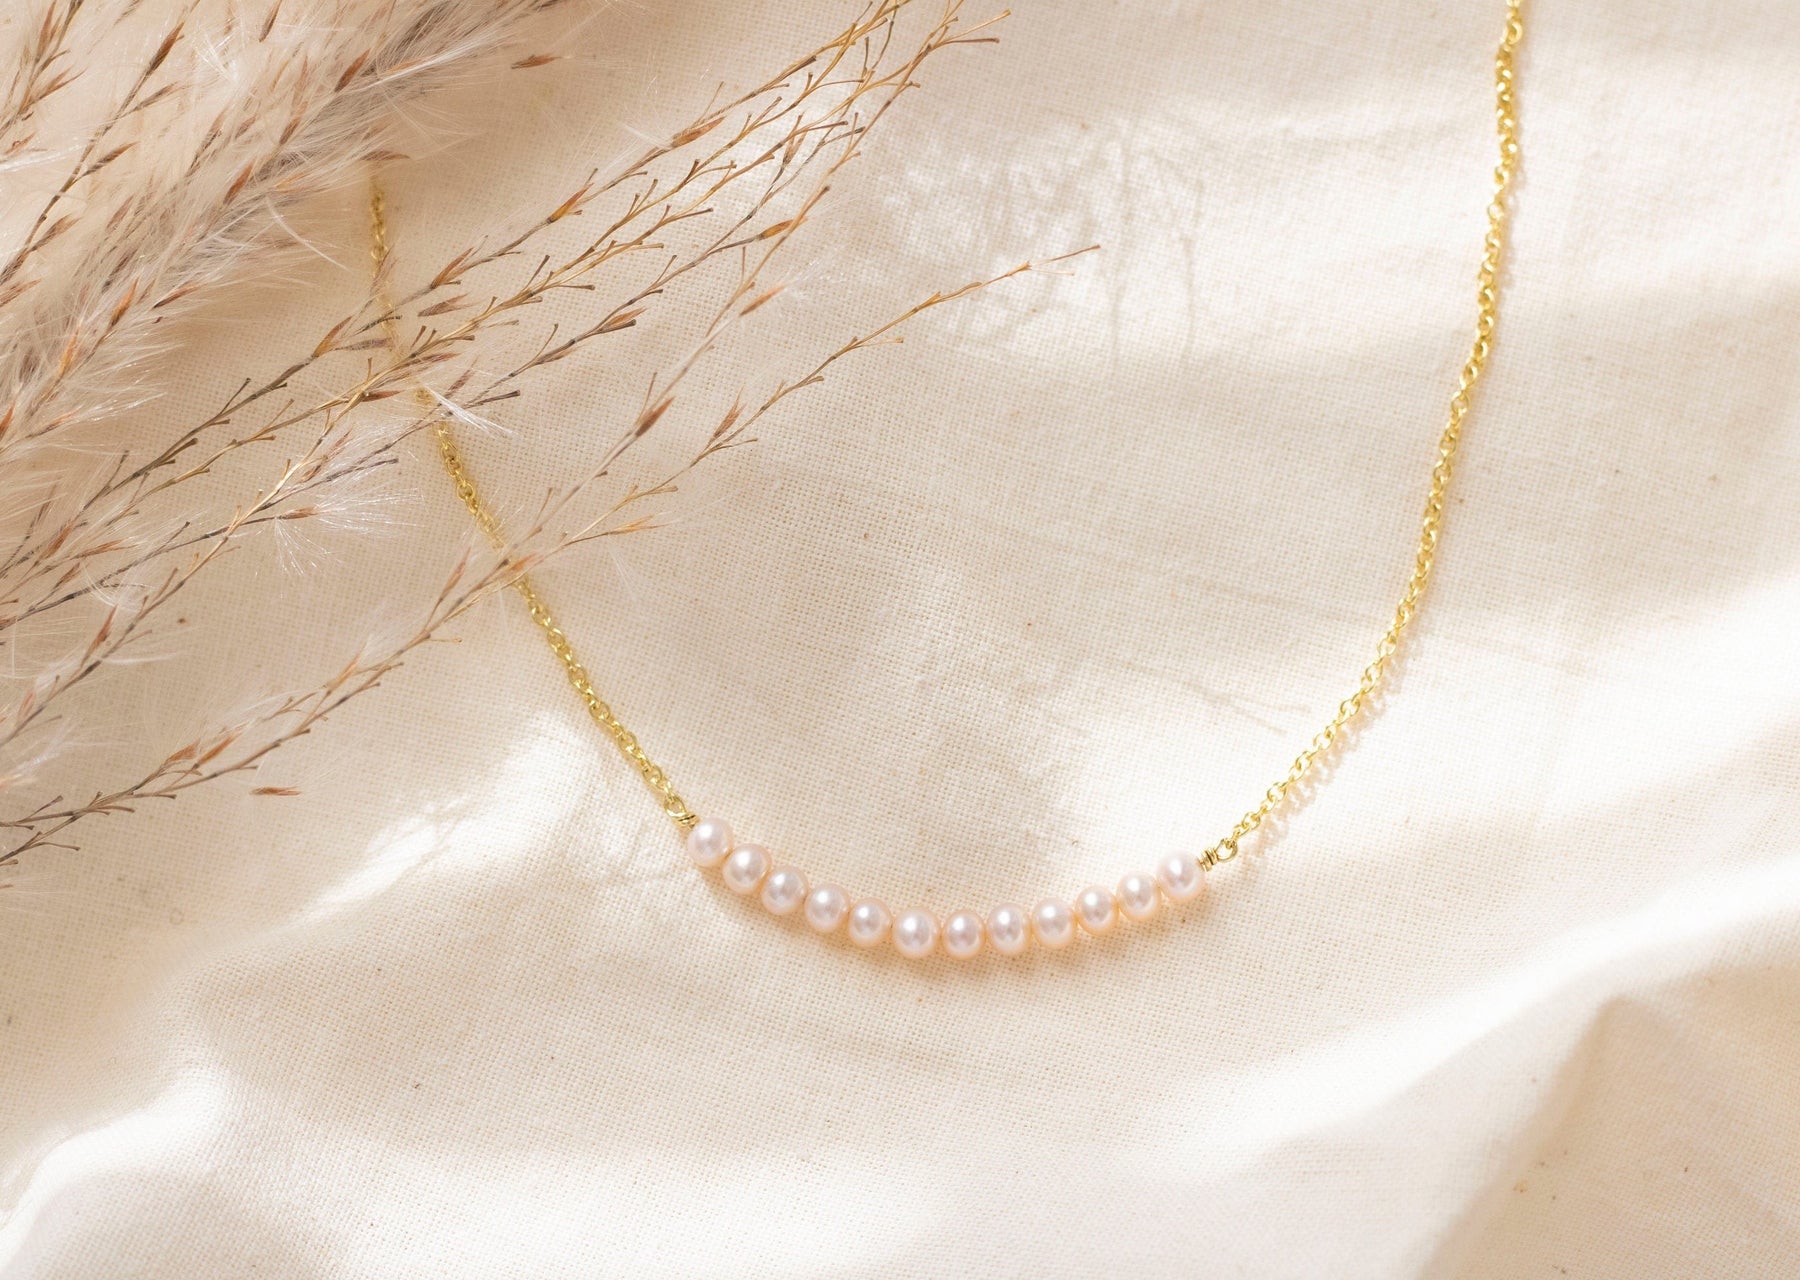 Goldkette 585 mit Süßwasserperlen, Pearls Bar Halskette 585, Braut Kette Gelbgold mit Perlen, 585 Perlenkette, handgefertigt